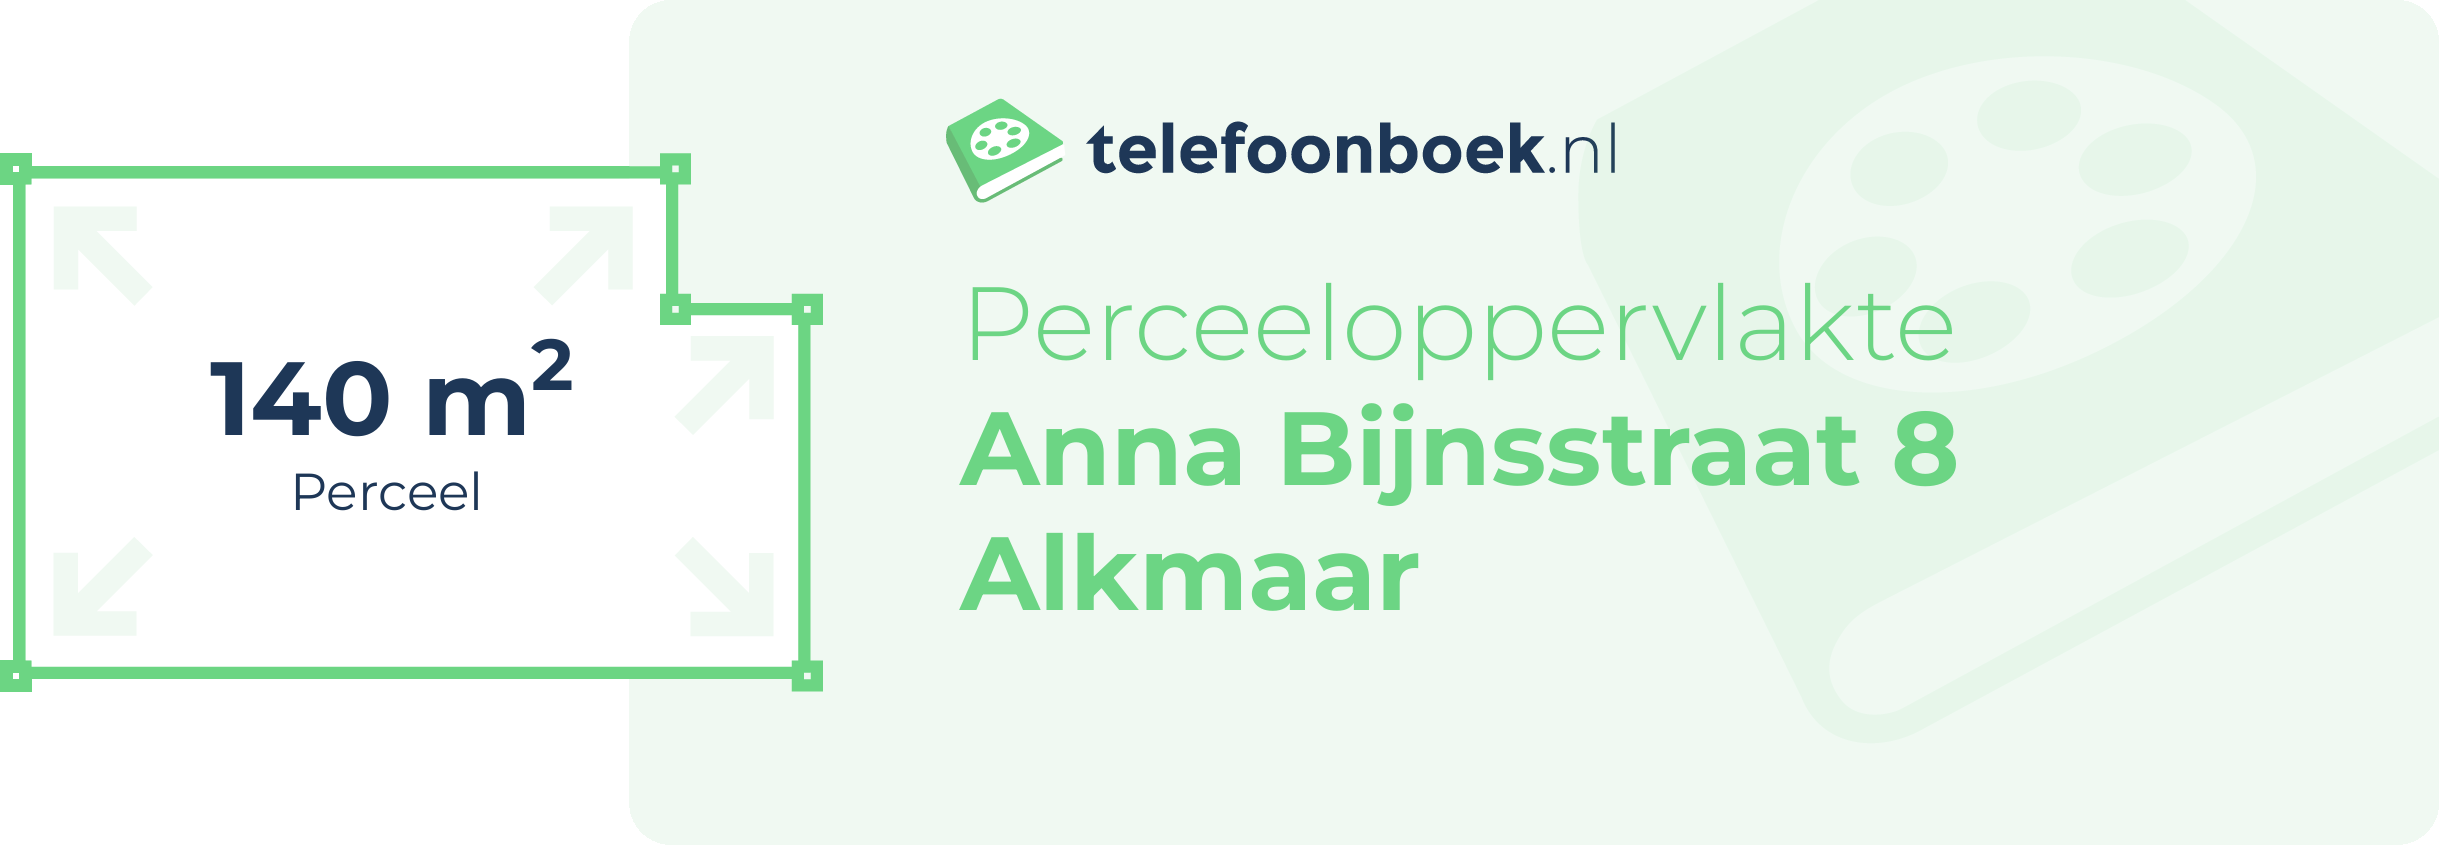 Perceeloppervlakte Anna Bijnsstraat 8 Alkmaar